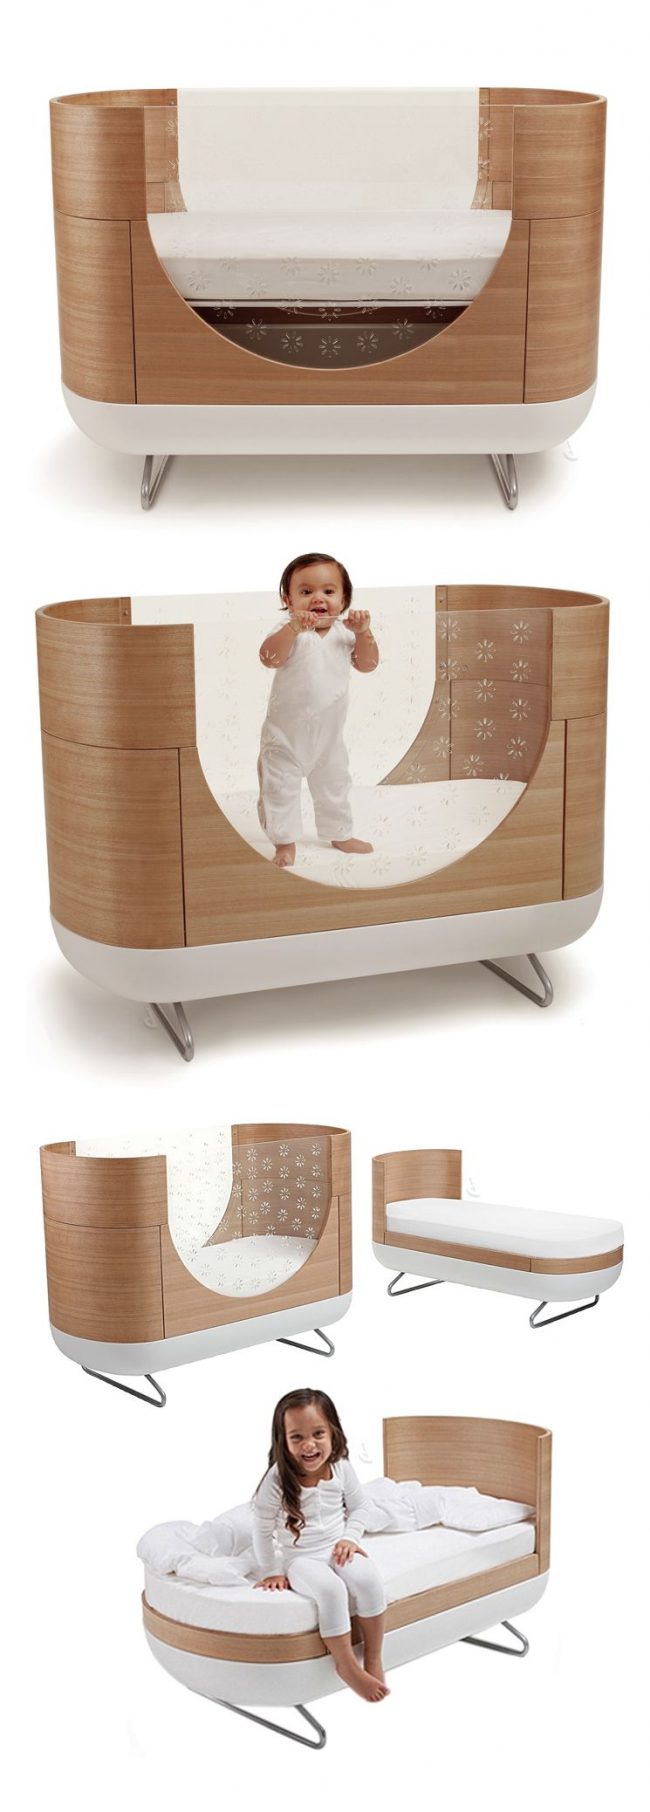 Детская кровать-трансформер удобна в использовании и сэкономит ваши деньги и место в комнате